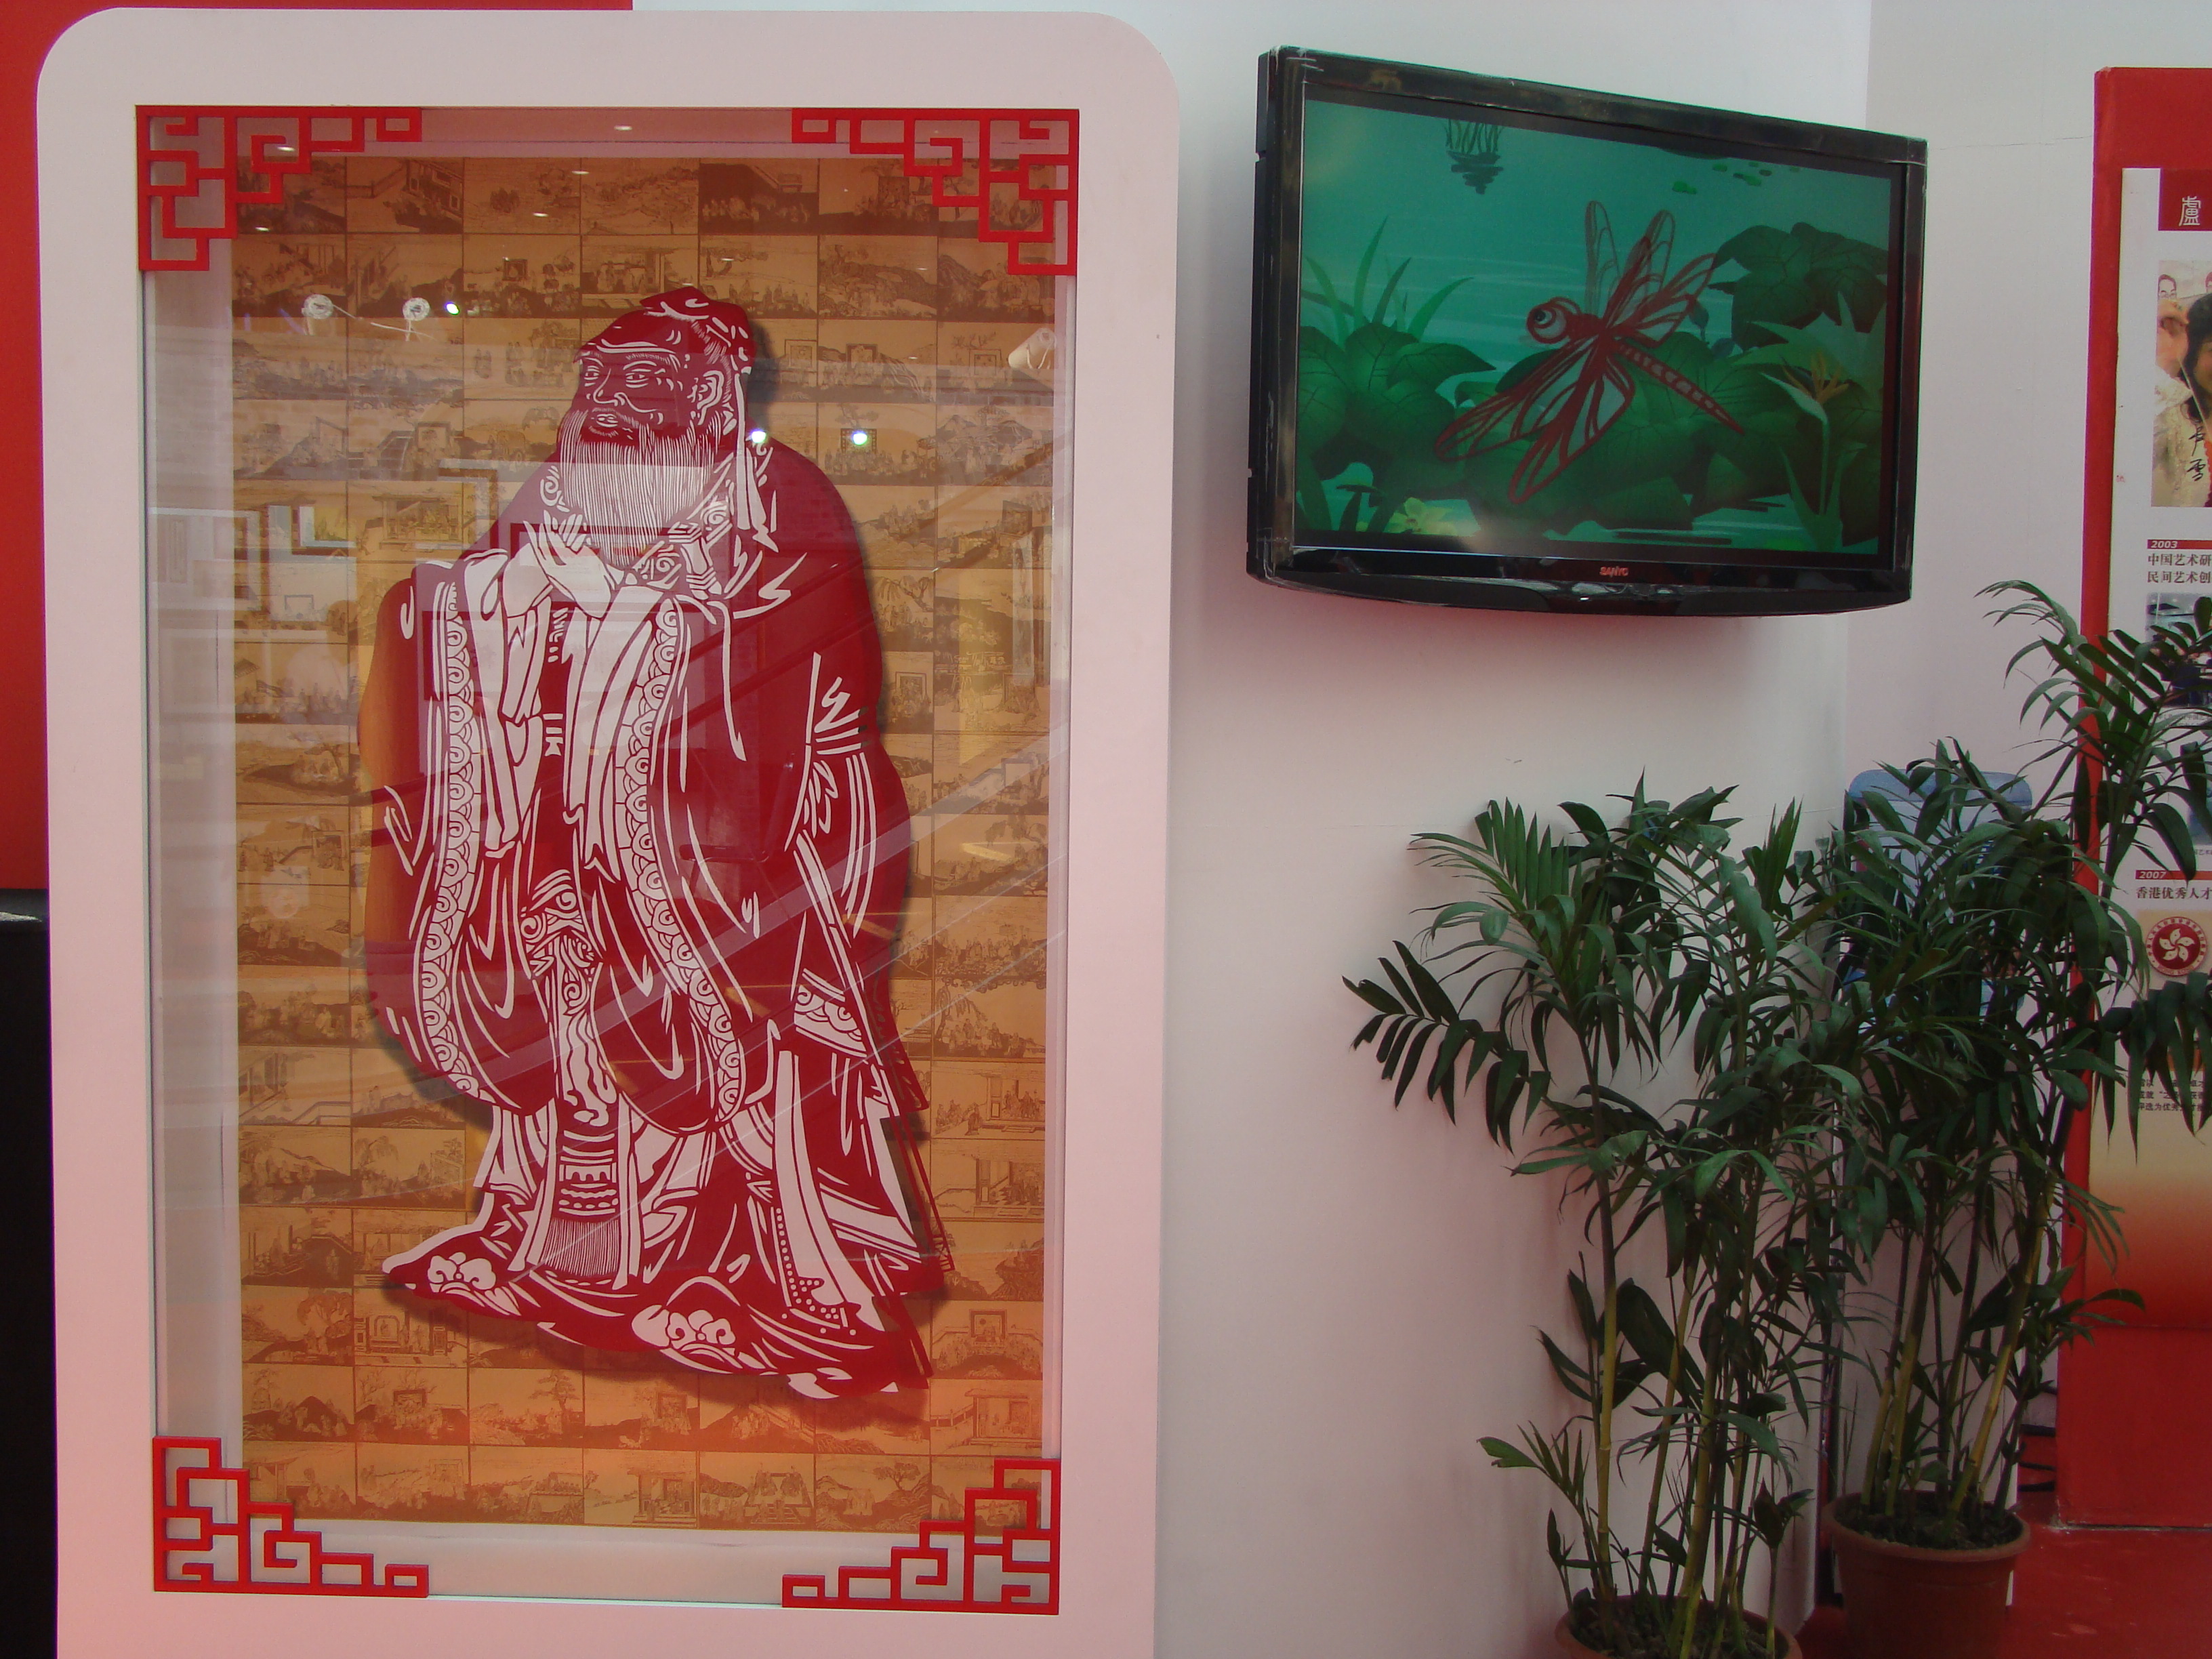 2010年10月在山东济南舜耕国际会展中心举办的首届非物质文化产业博览会上卢雪展出的作品《孔子》，获得金奖证书